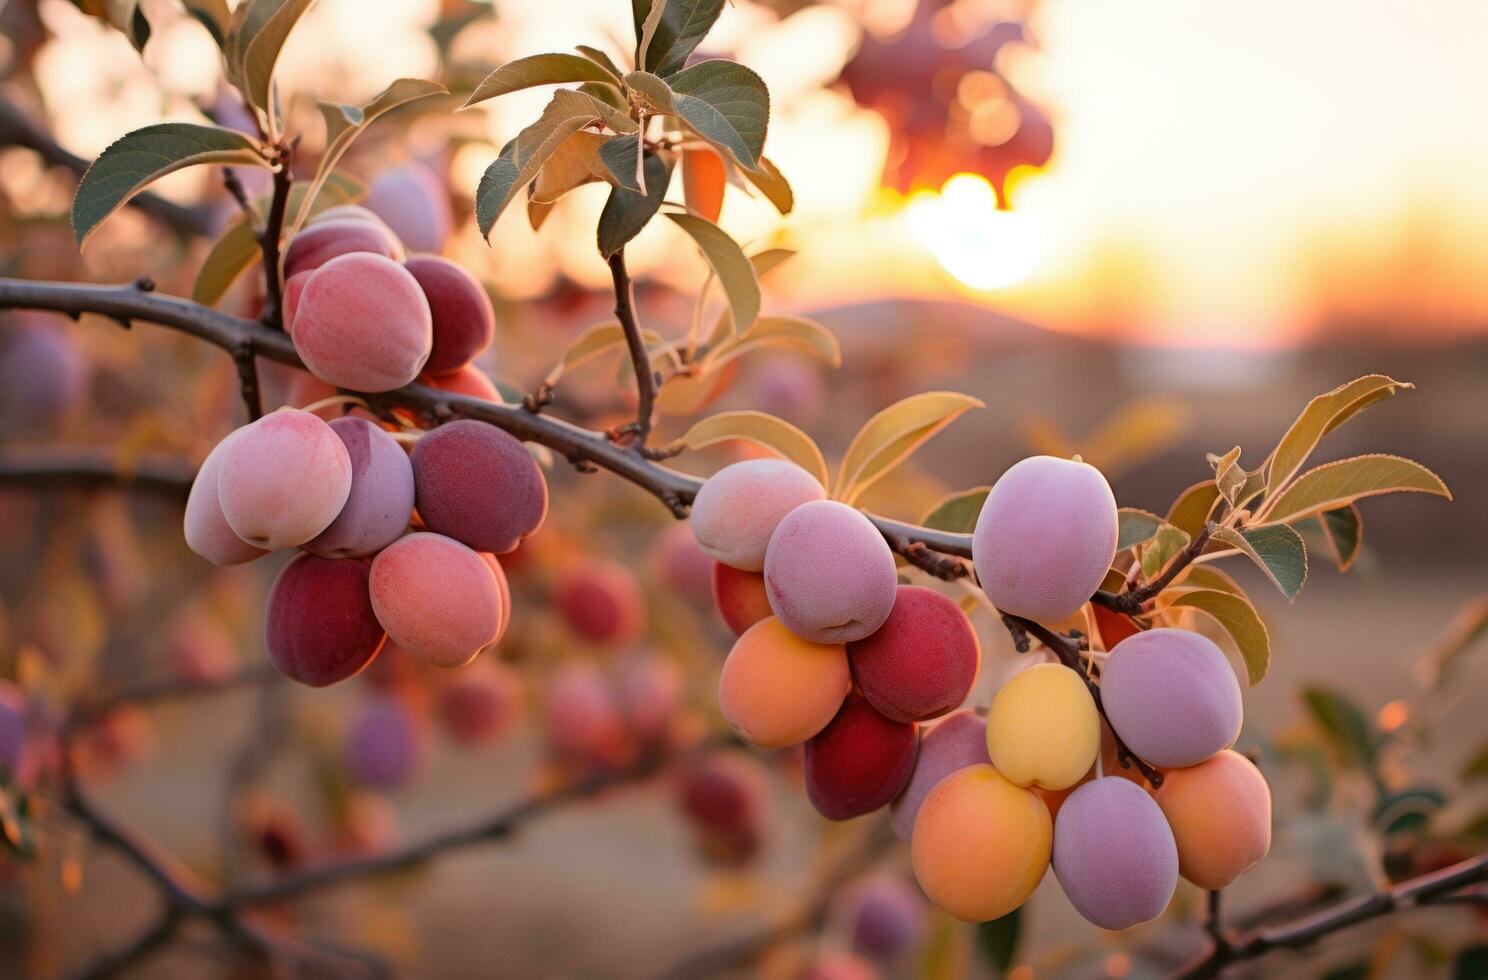 AI generated plum tree at sunset with full orange fruit, photo